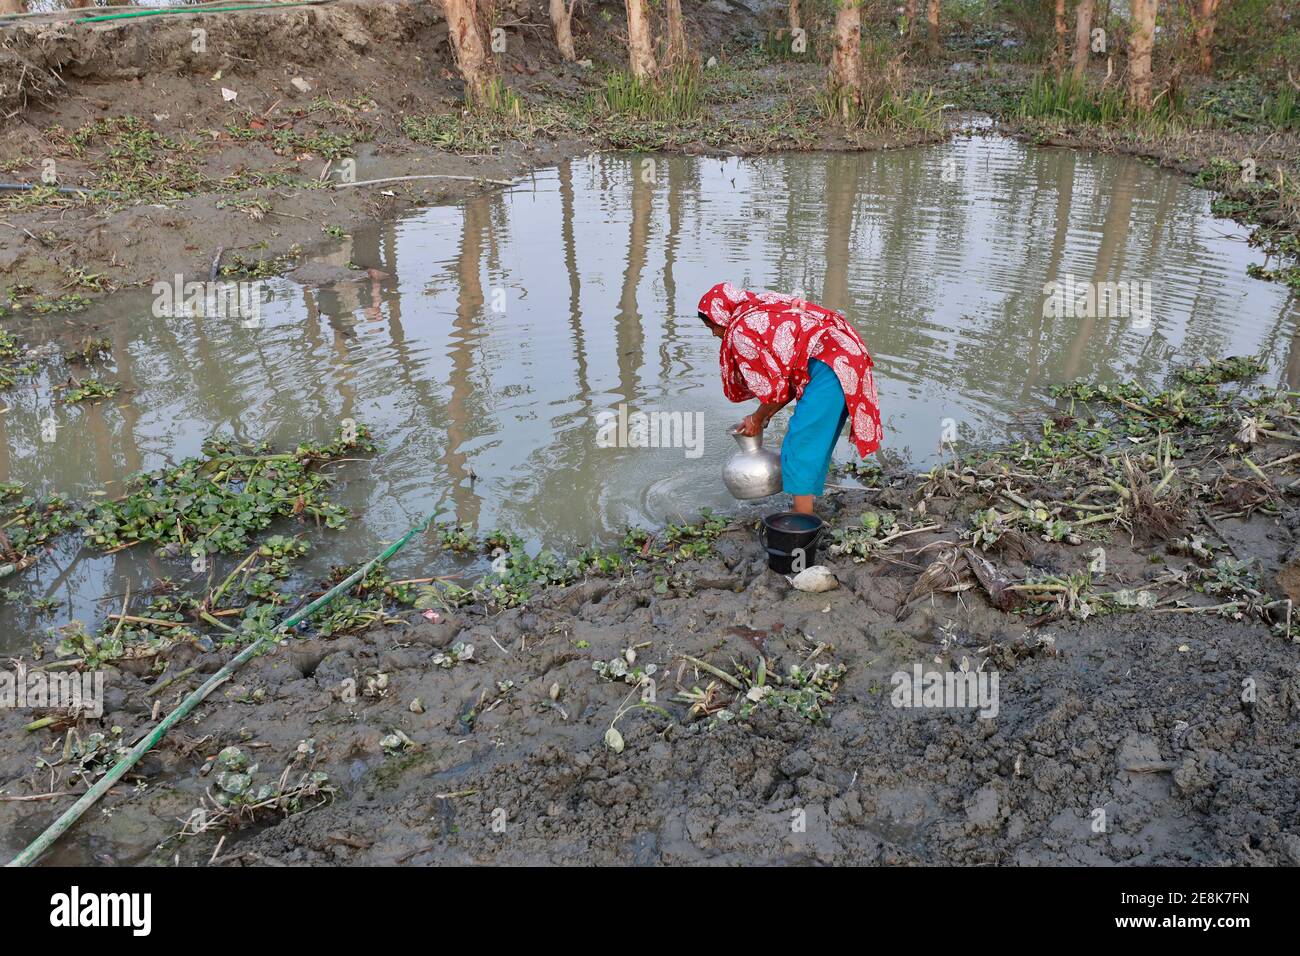 Bagerhat, Bangladesh - 21 gennaio 2021: L'effetto dell'acqua salata è maggiore nelle zone costiere del Bangladesh. La gente in questa regione soffre molto per f Foto Stock